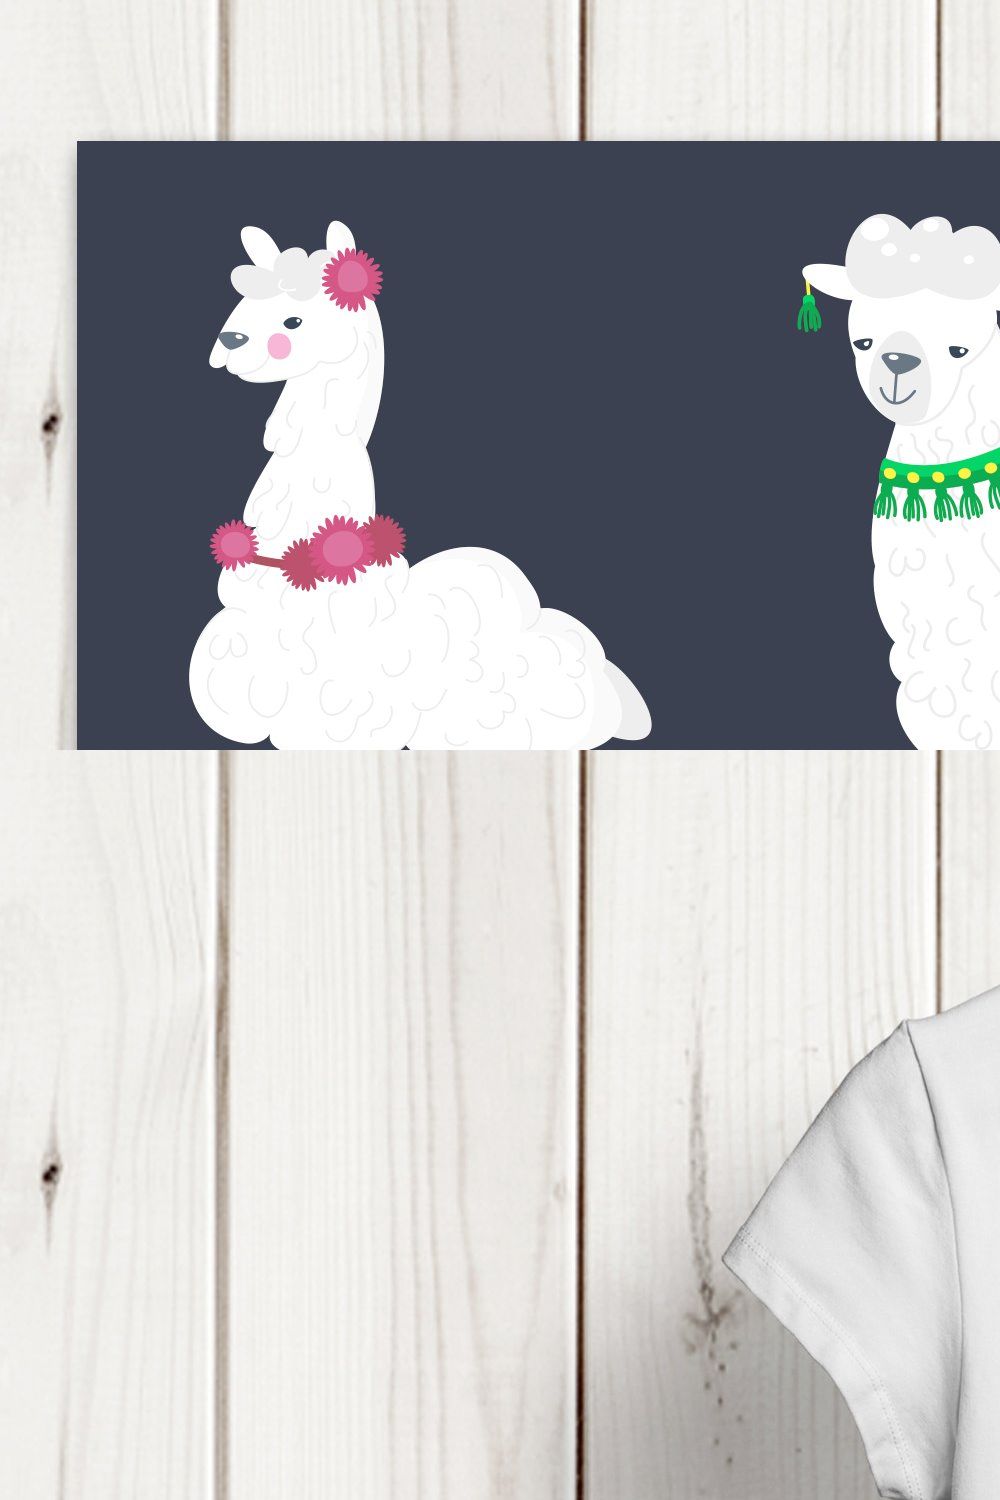 Llama and alpaca vector clip art pinterest preview image.